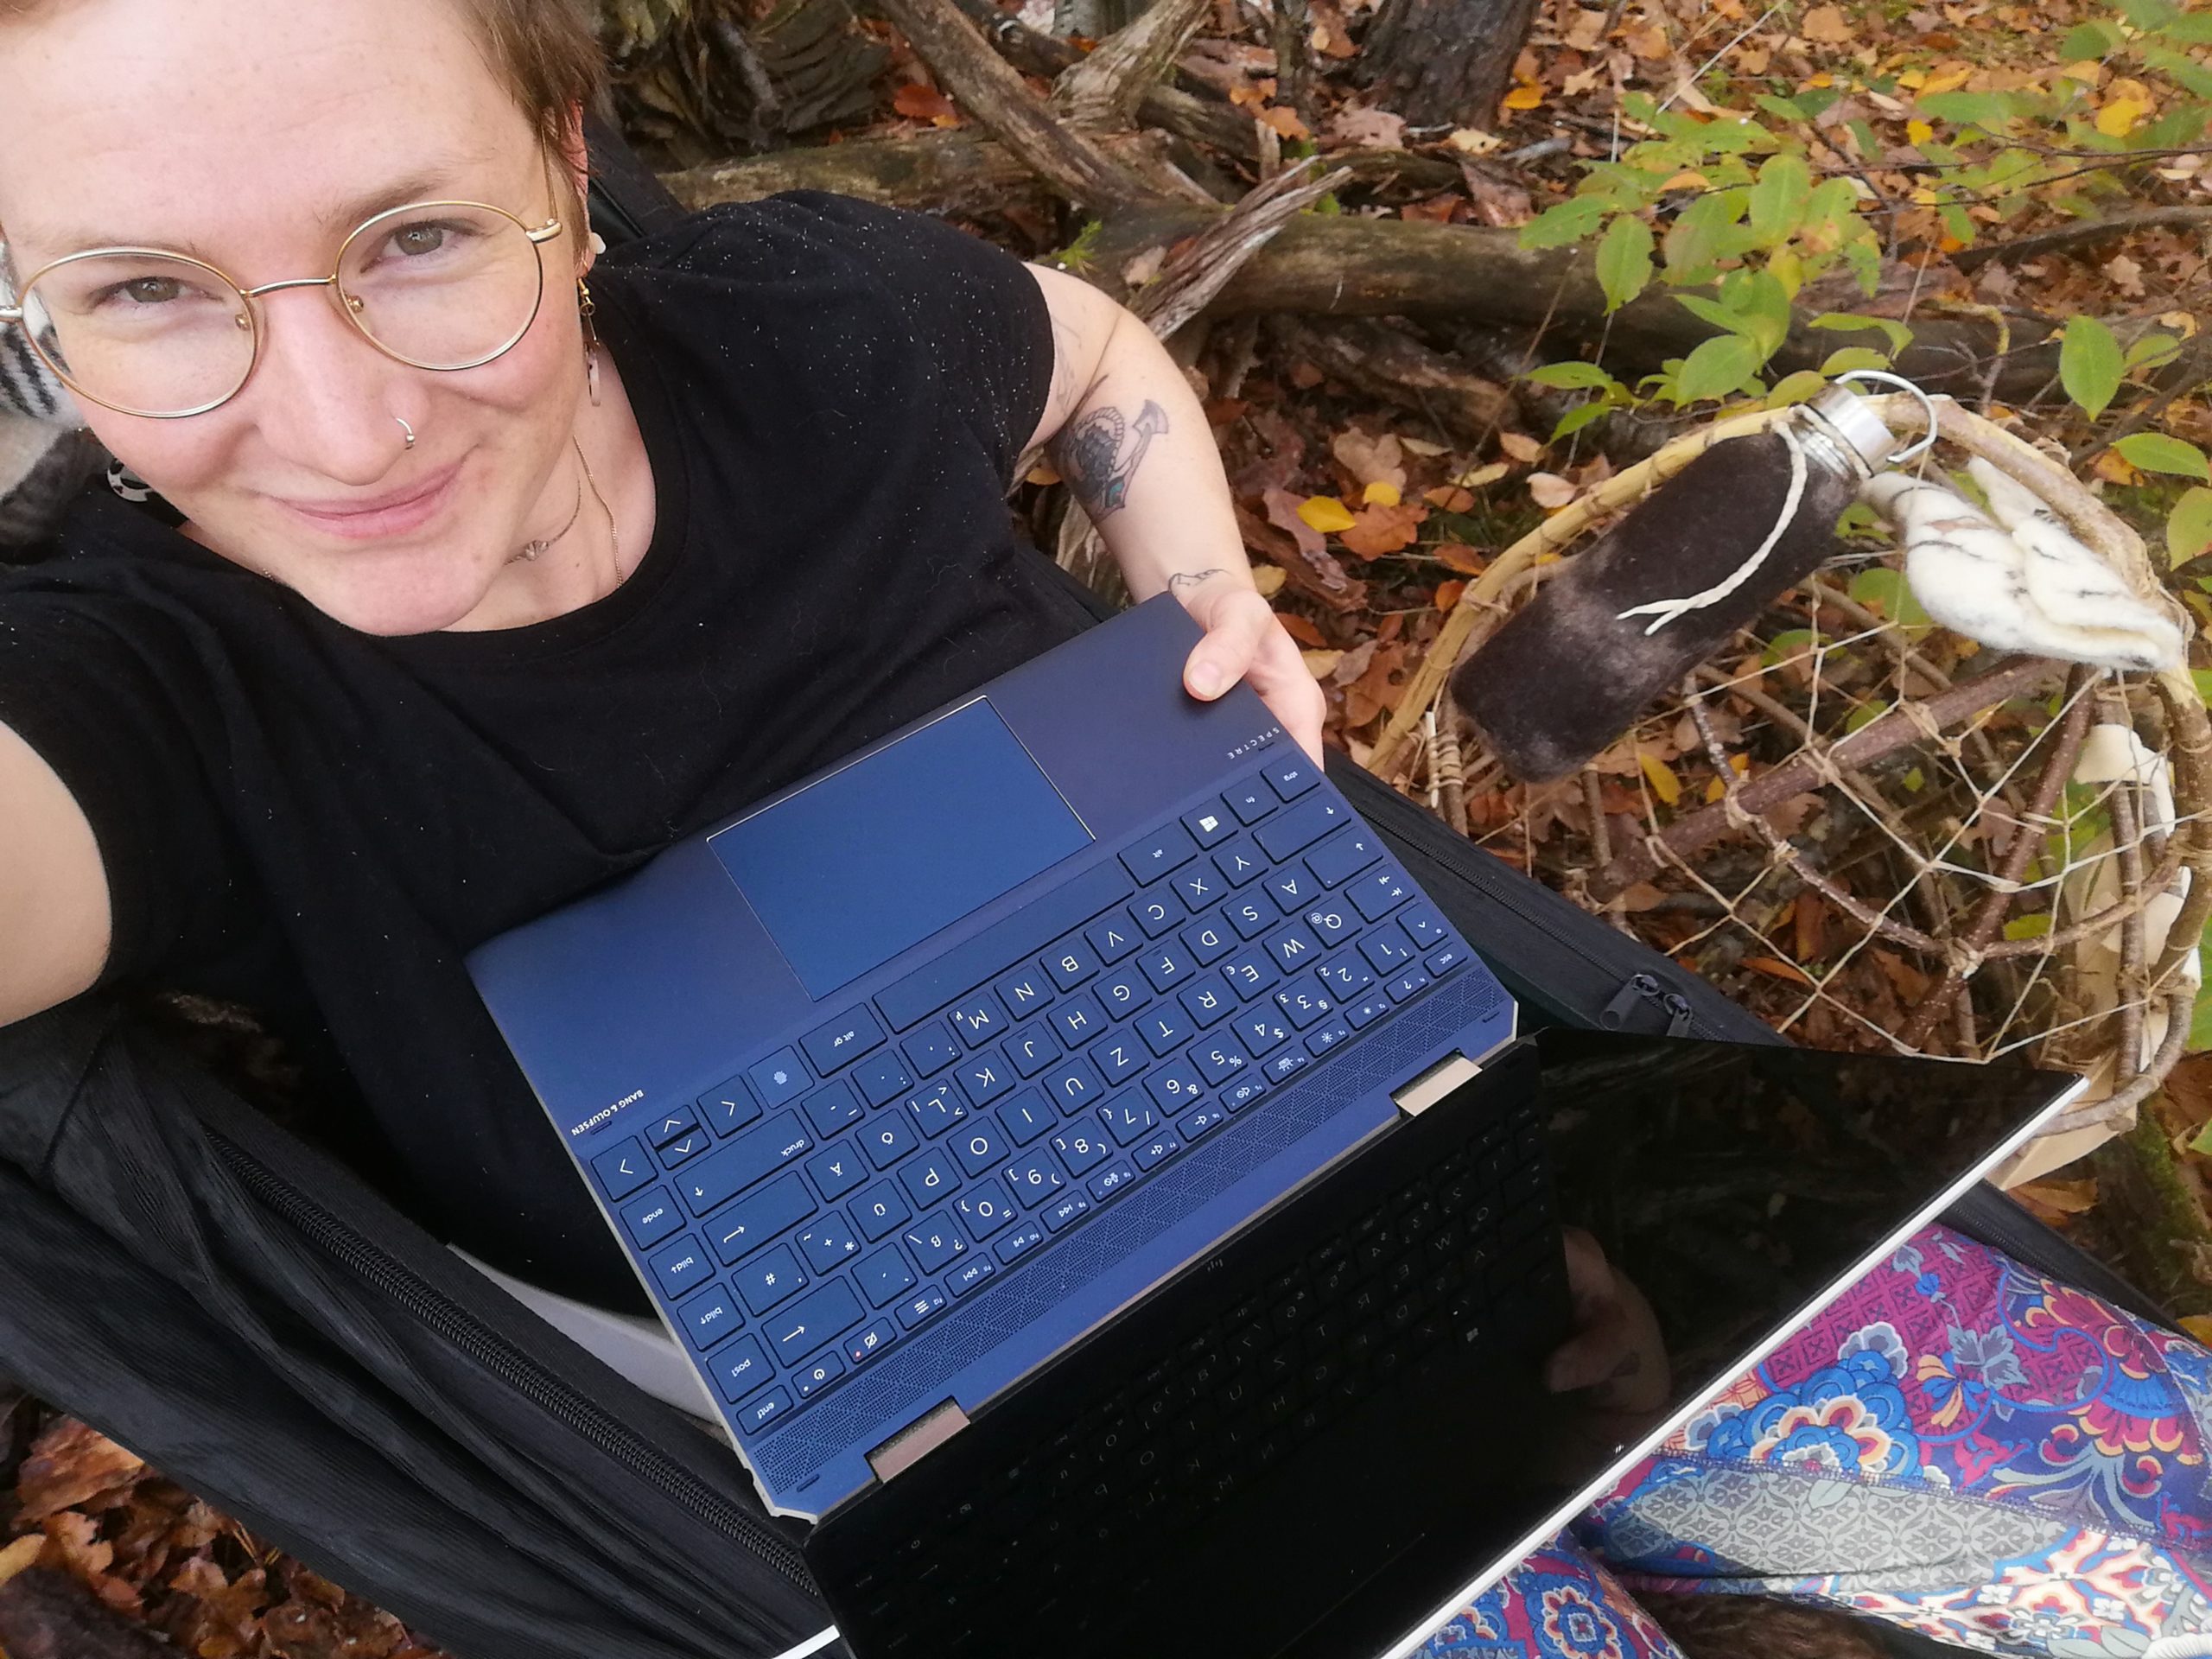 Elena liegt mit Laptop in der Hängematte im bunt belaubten Herbstwald. Neben ihr ist ein Packkorb aus Holz zu sehen.